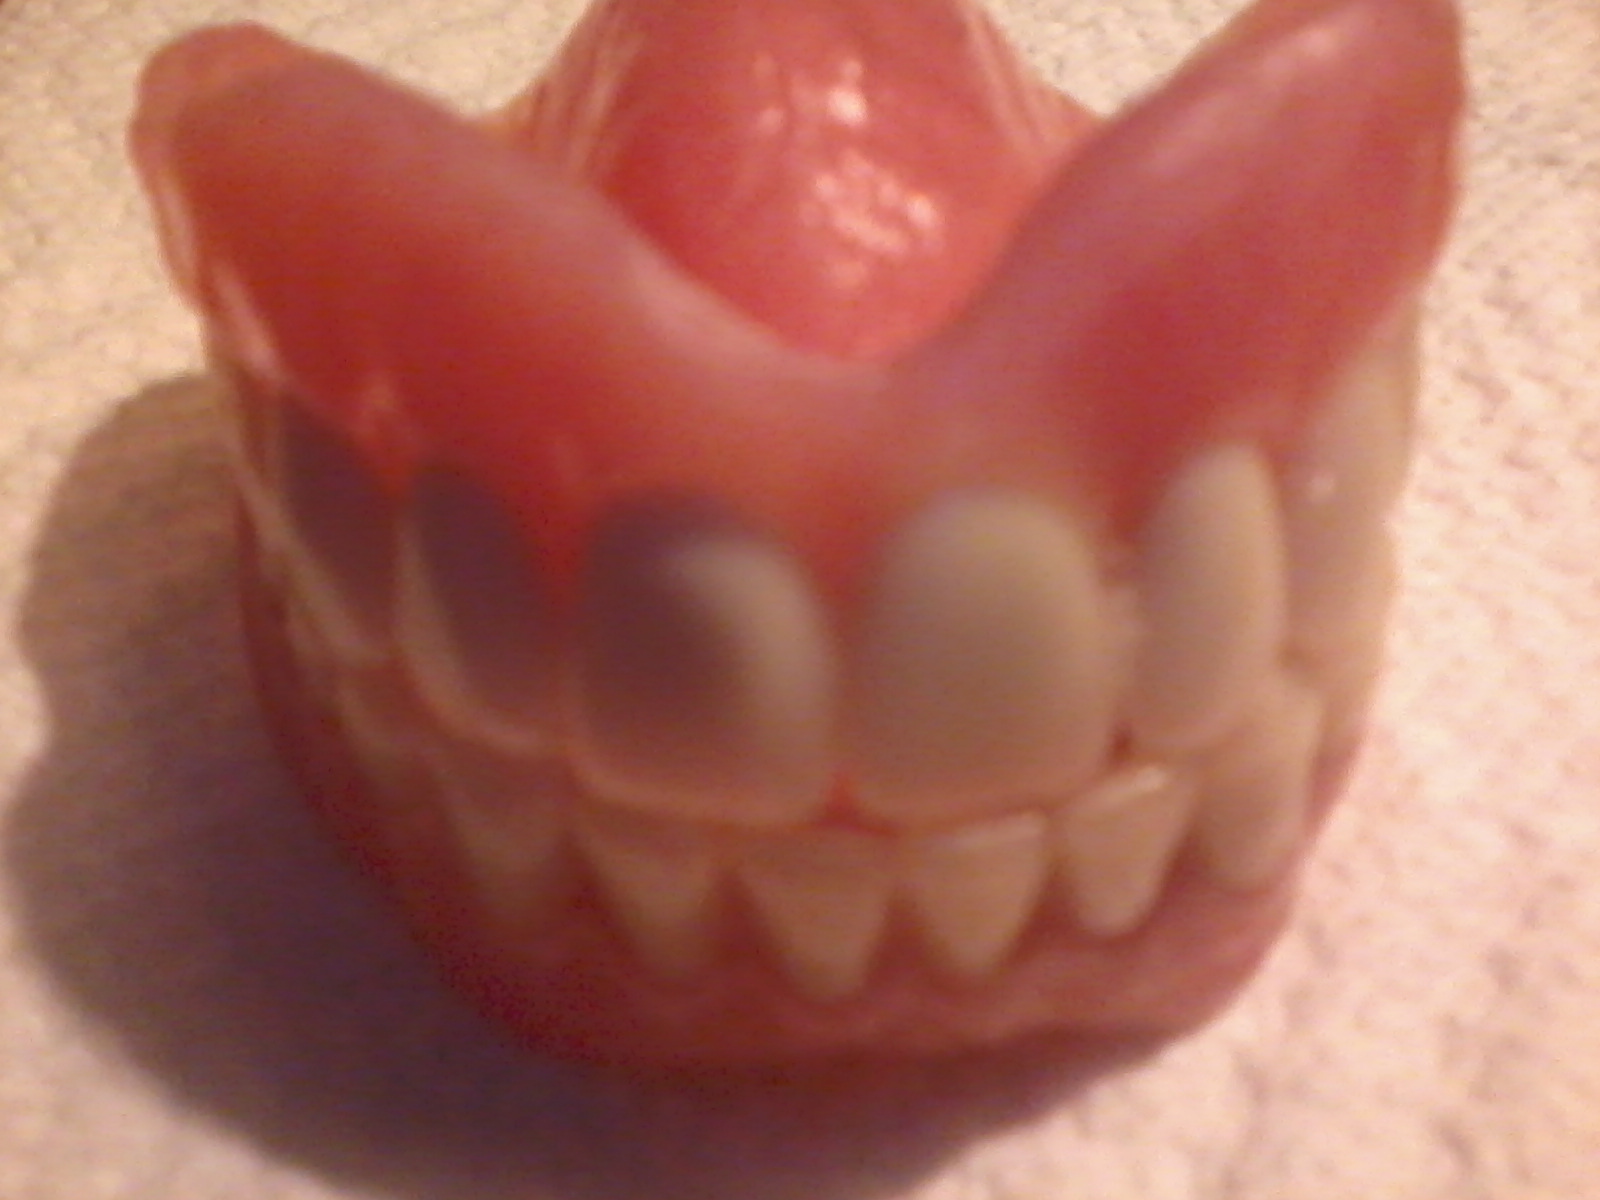 I Have False Teeth - and I Love Them!